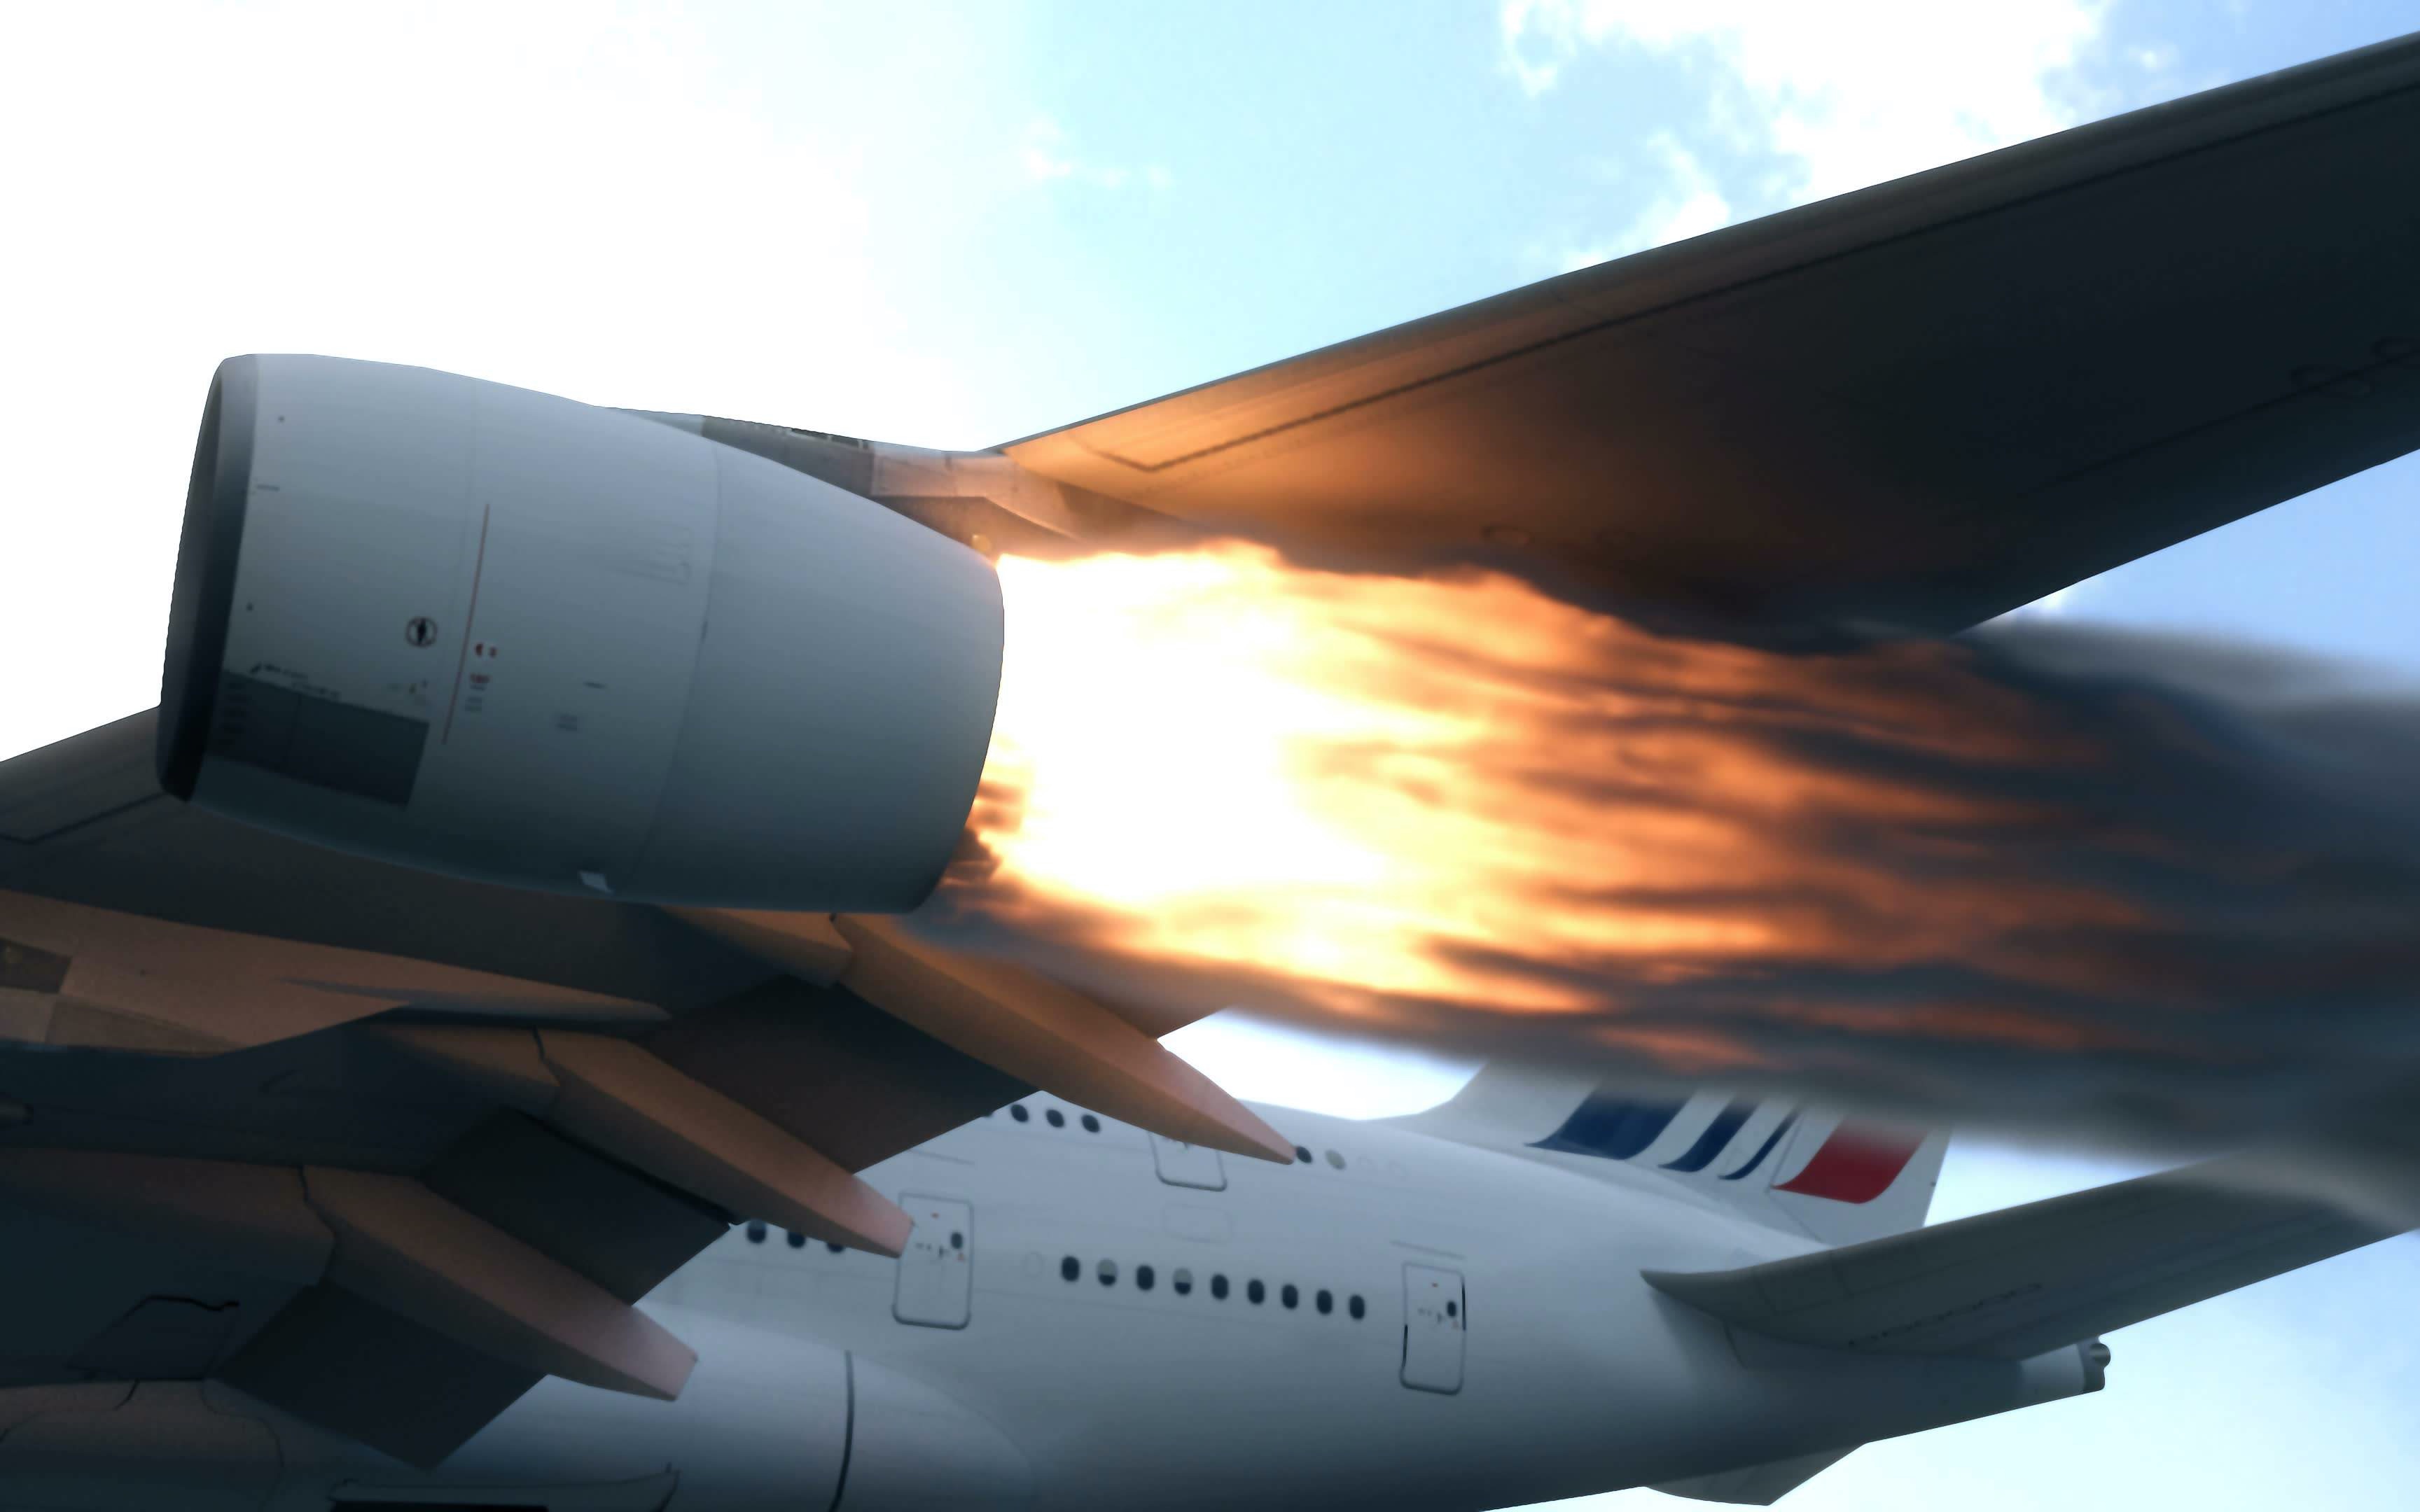 又是波音!波音737max的飞机引擎又着火,波音怎么了?